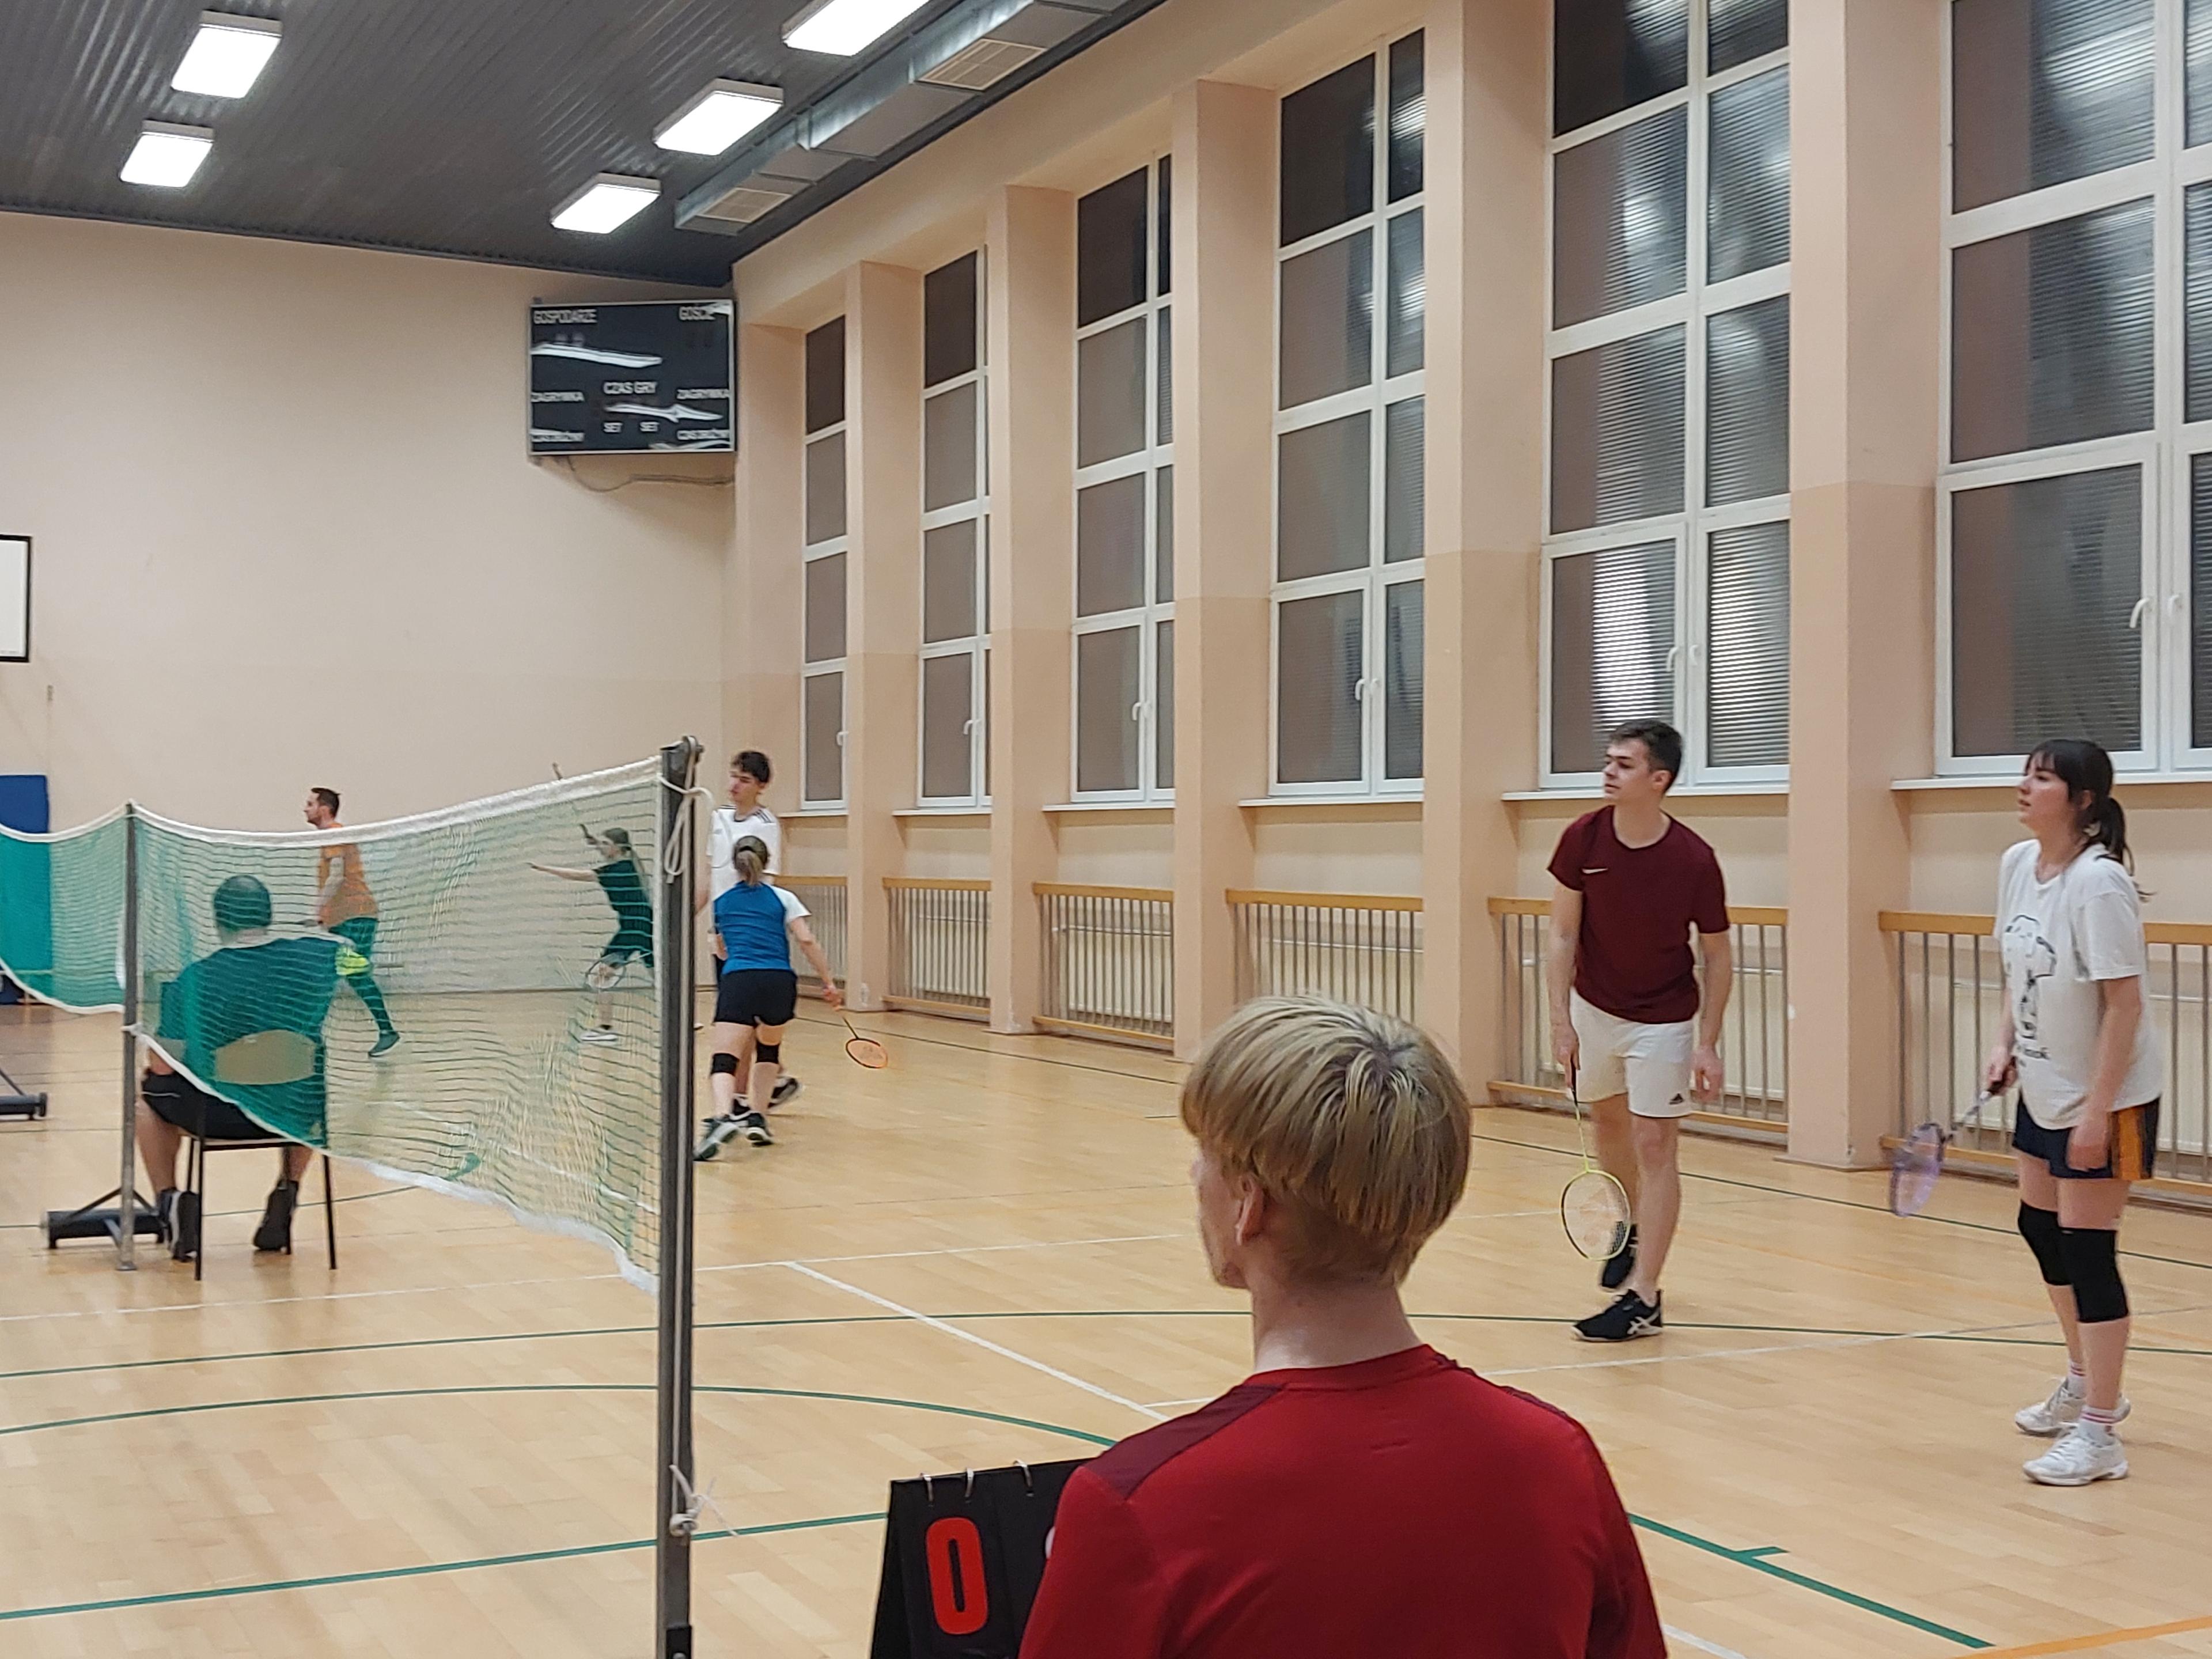 Mistrzostwa uczelni w badmintona w mikście oraz podsumowanie Uniwersyteckiego Wieloboju Badmintonowego 2023